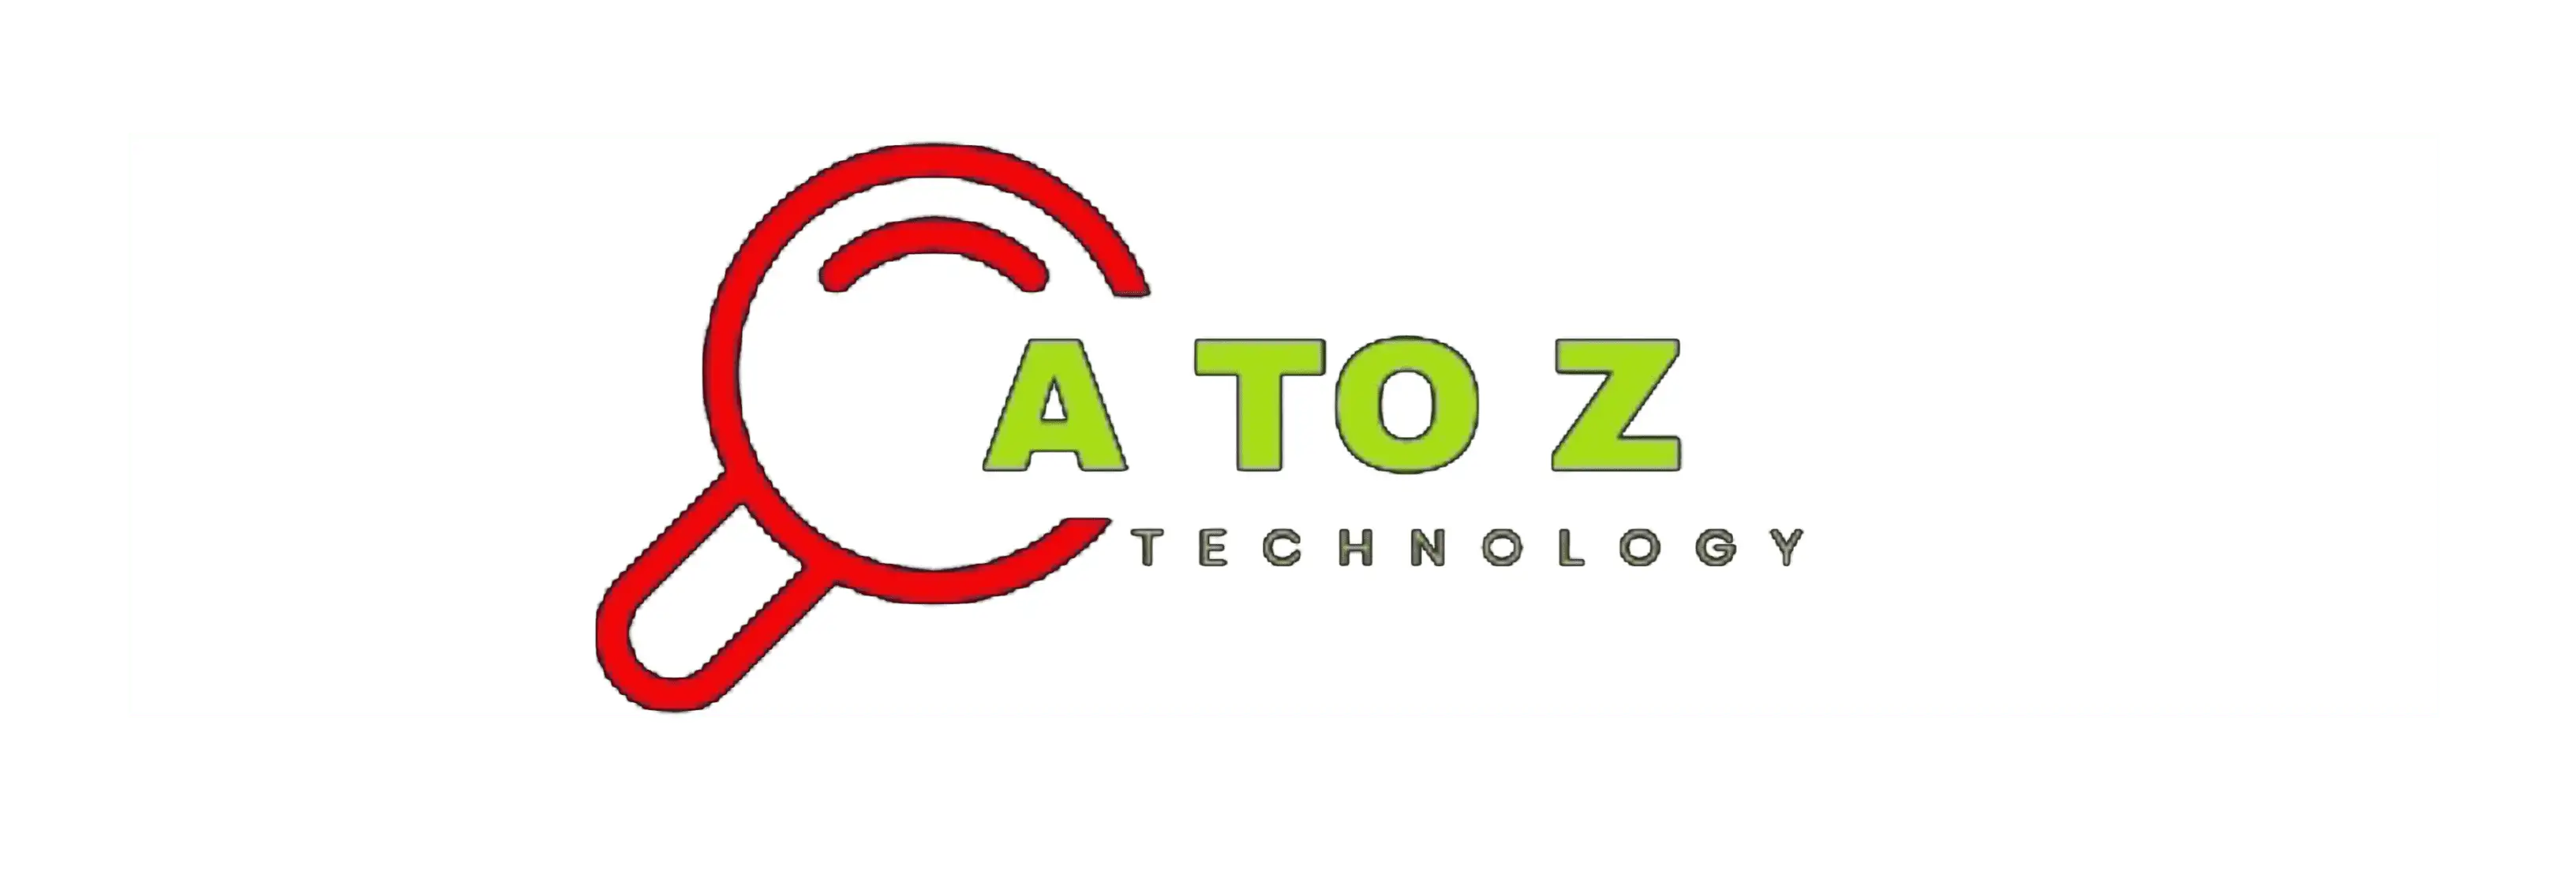 A to Z Technology